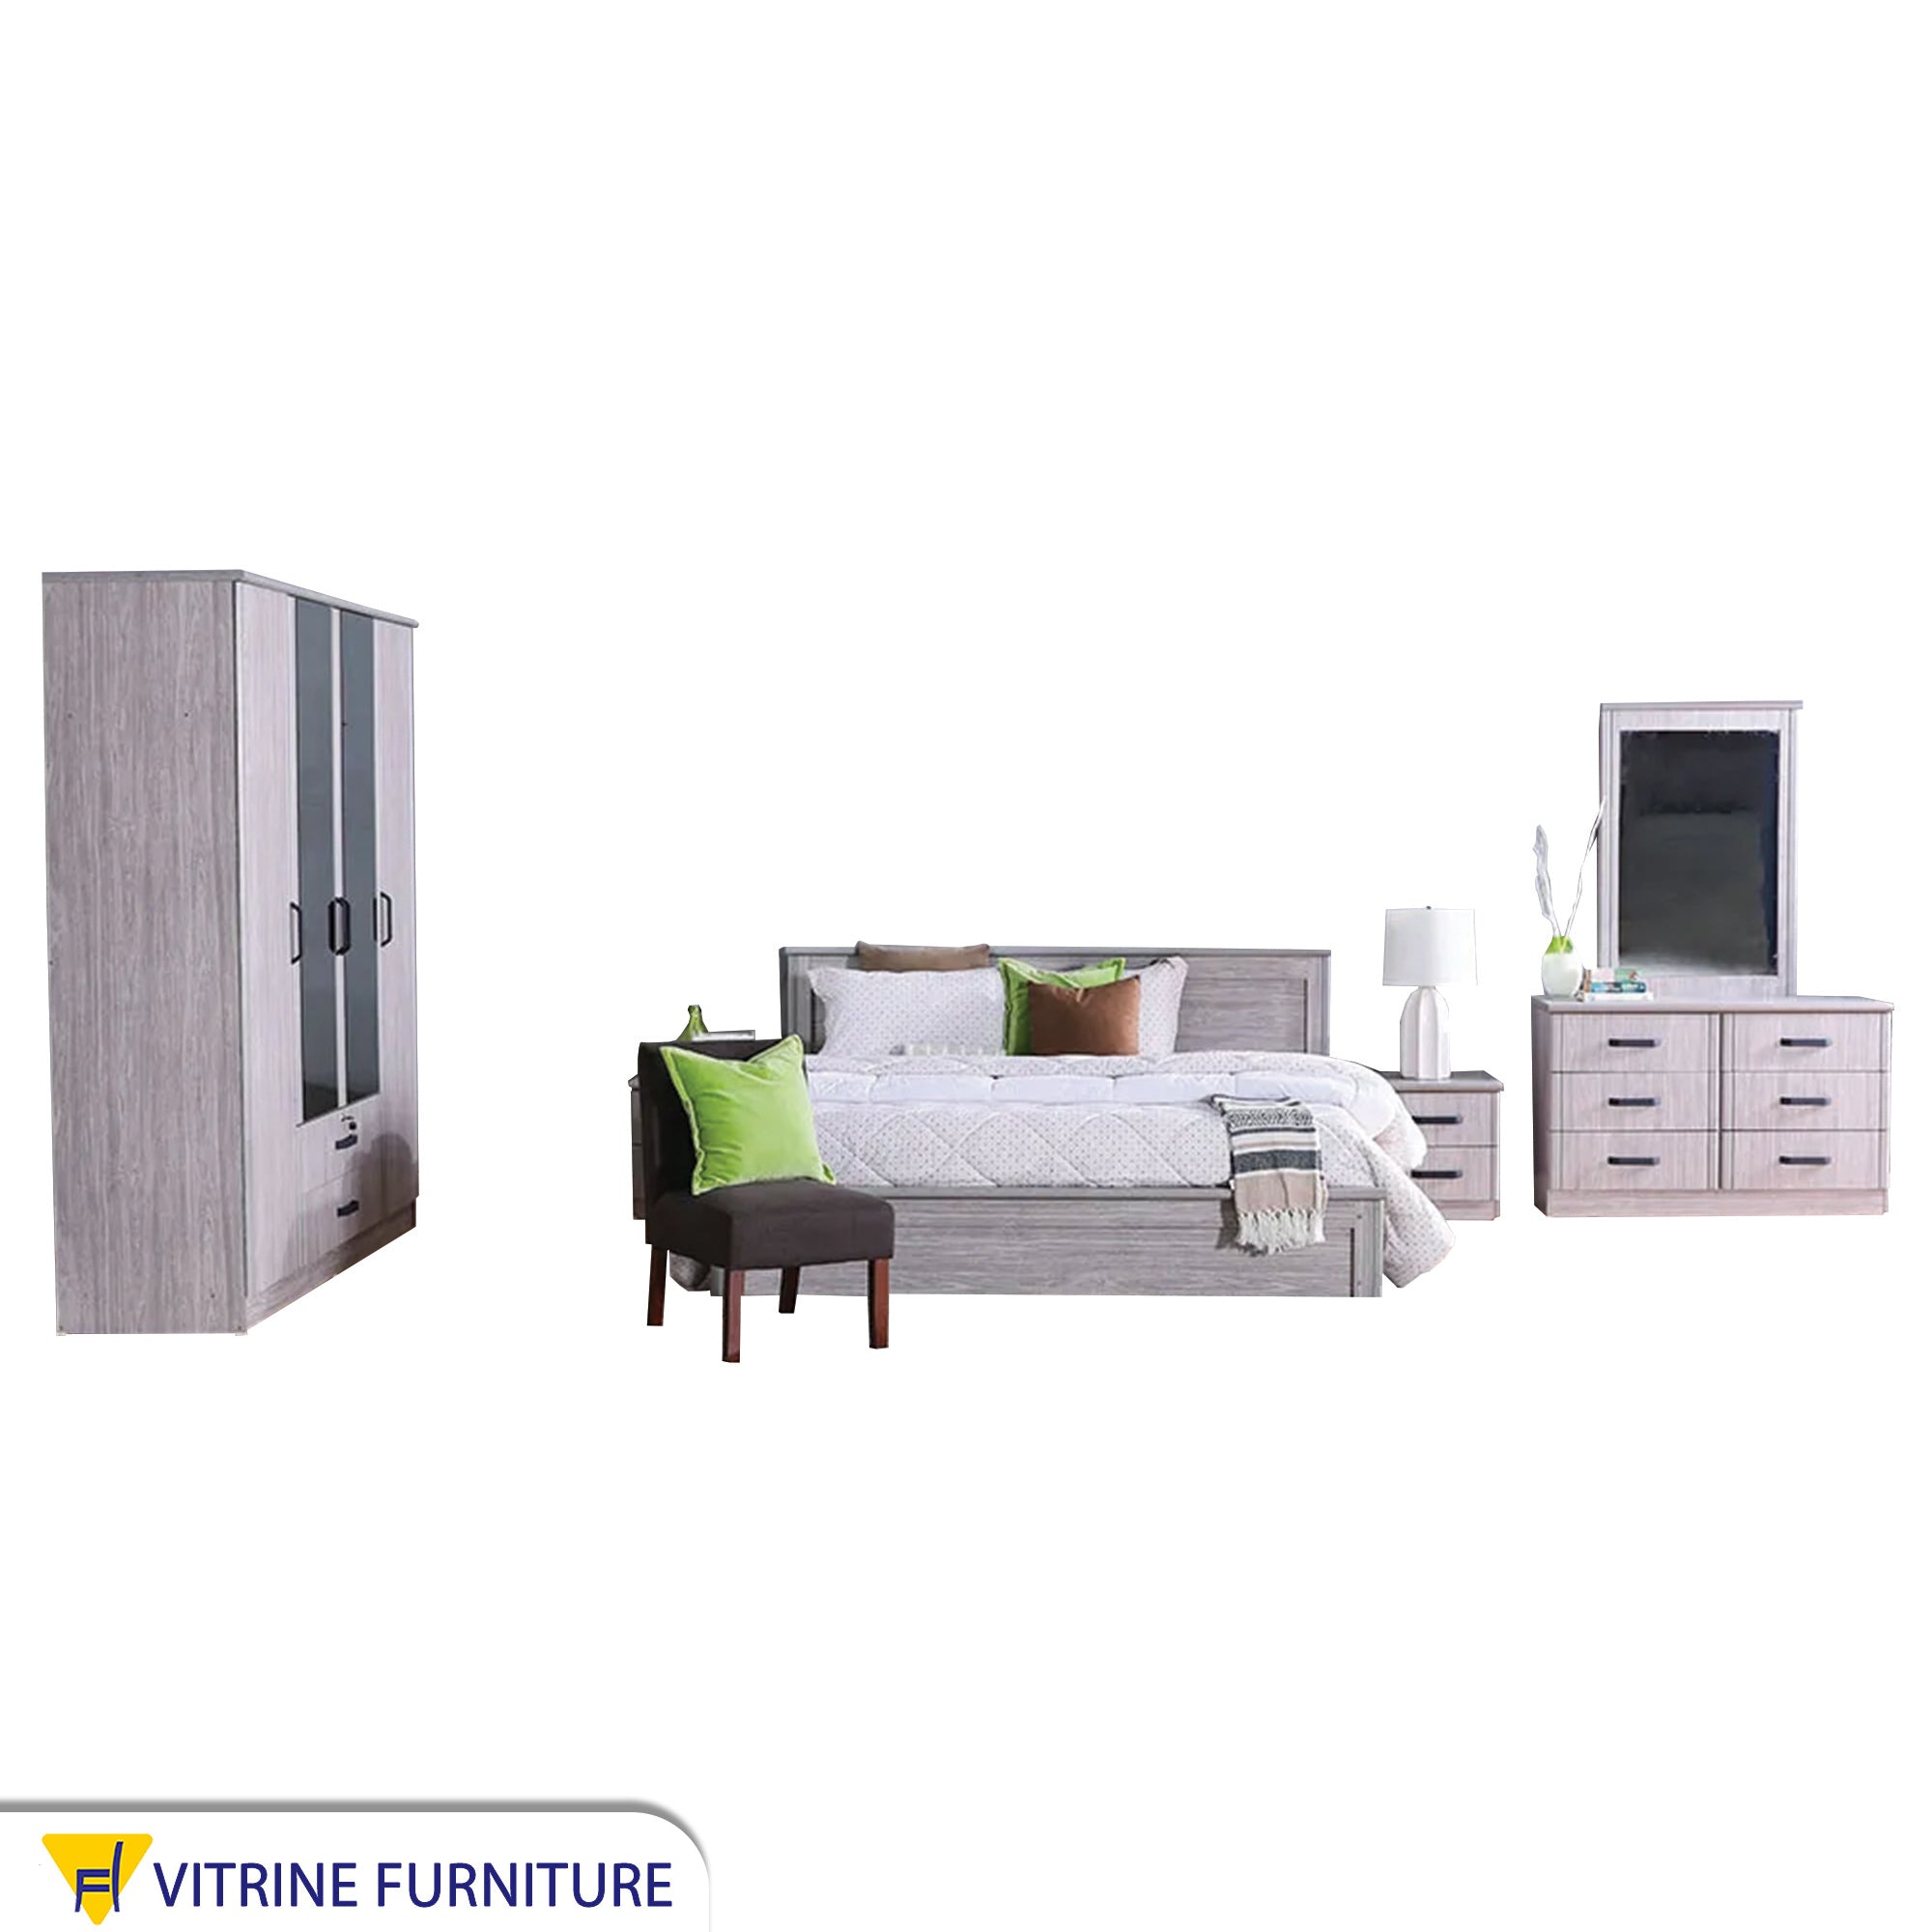 Master bedroom, white wooden